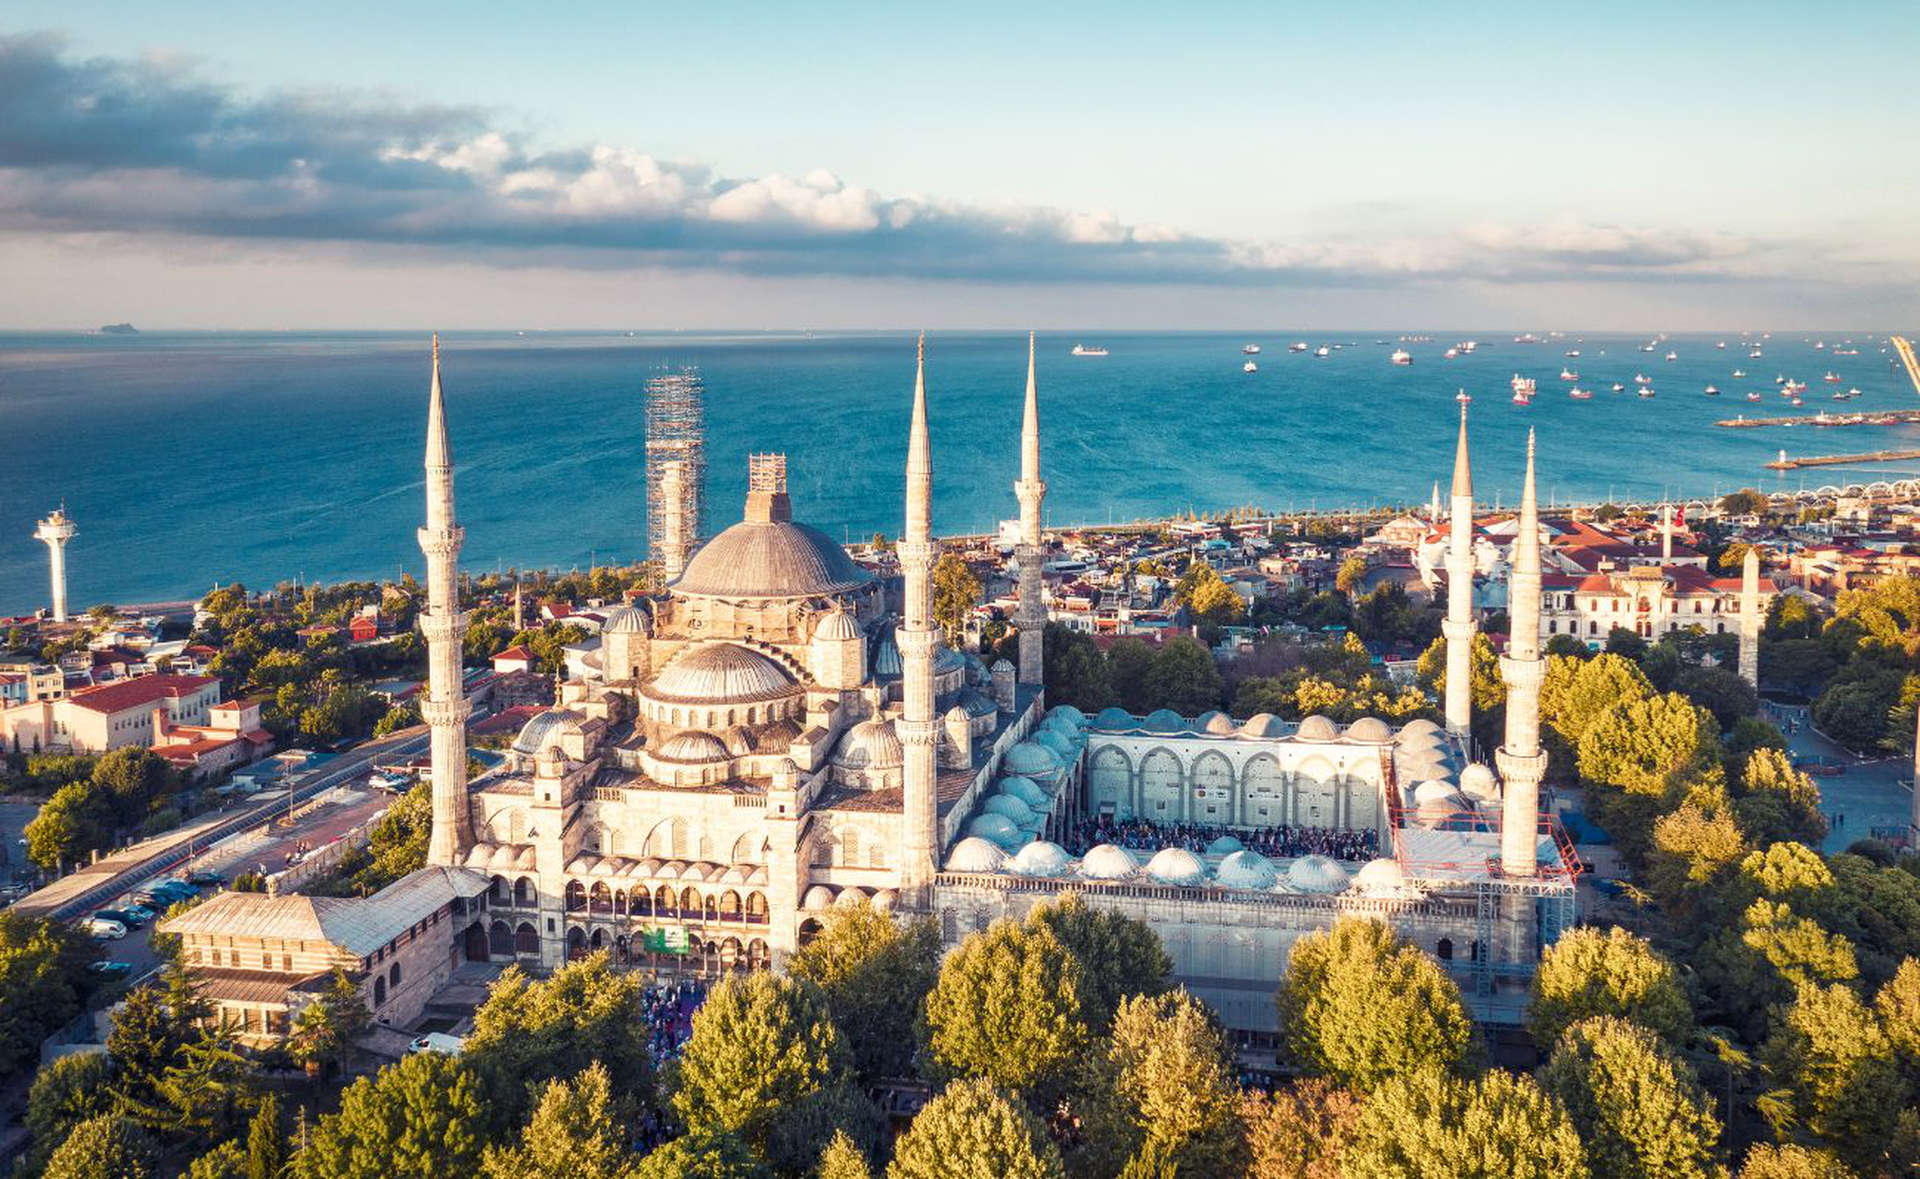 Sultanahmet, Istanbul